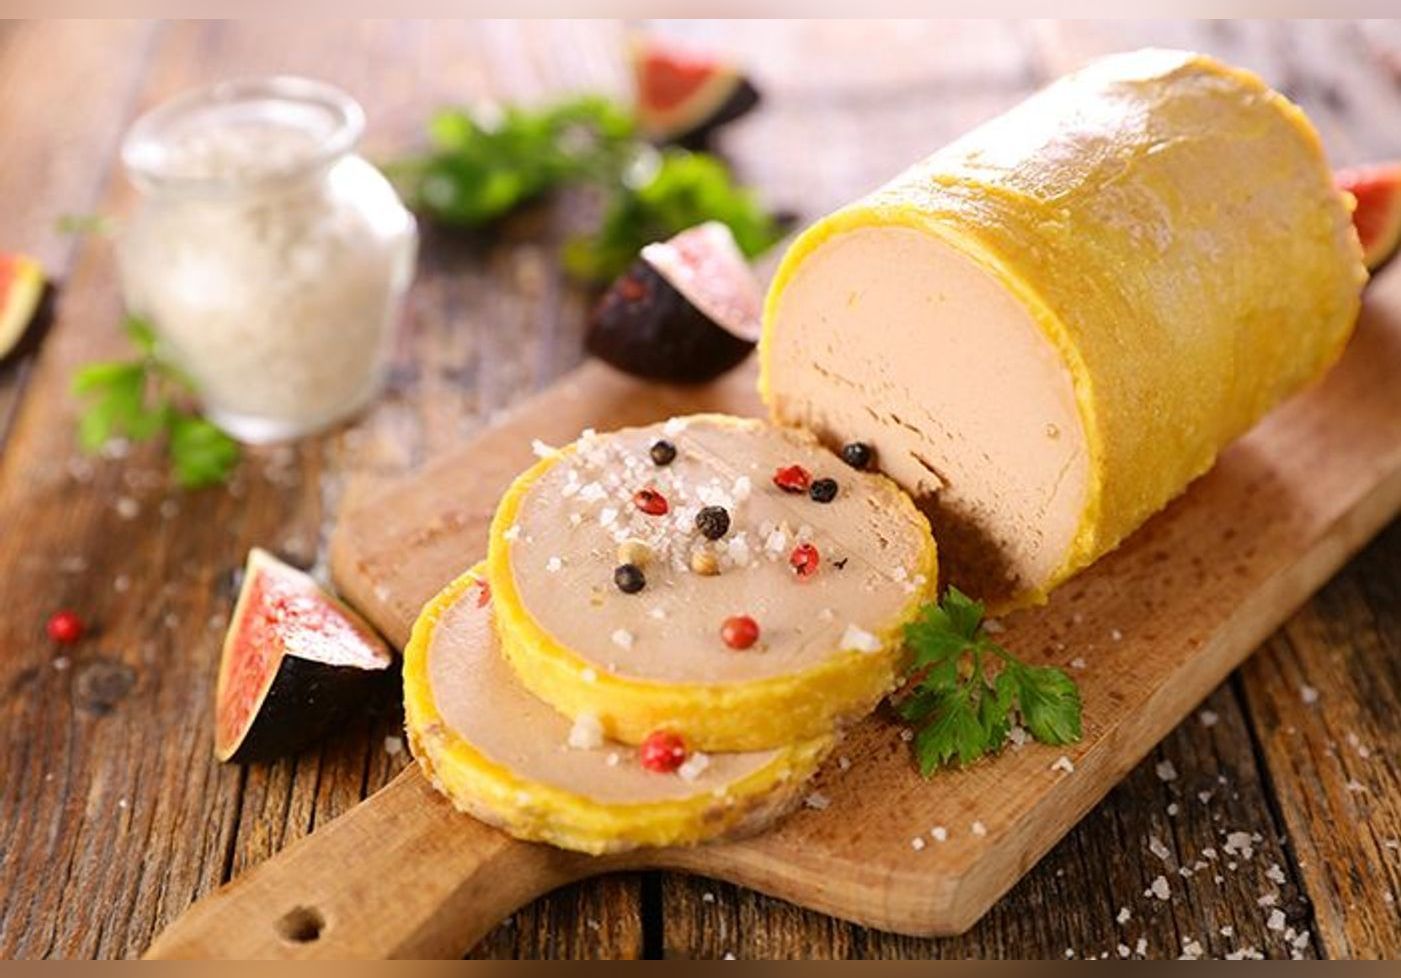 Voici le meilleur foie gras pour les fêtes, selon 60 millions de consommateurs